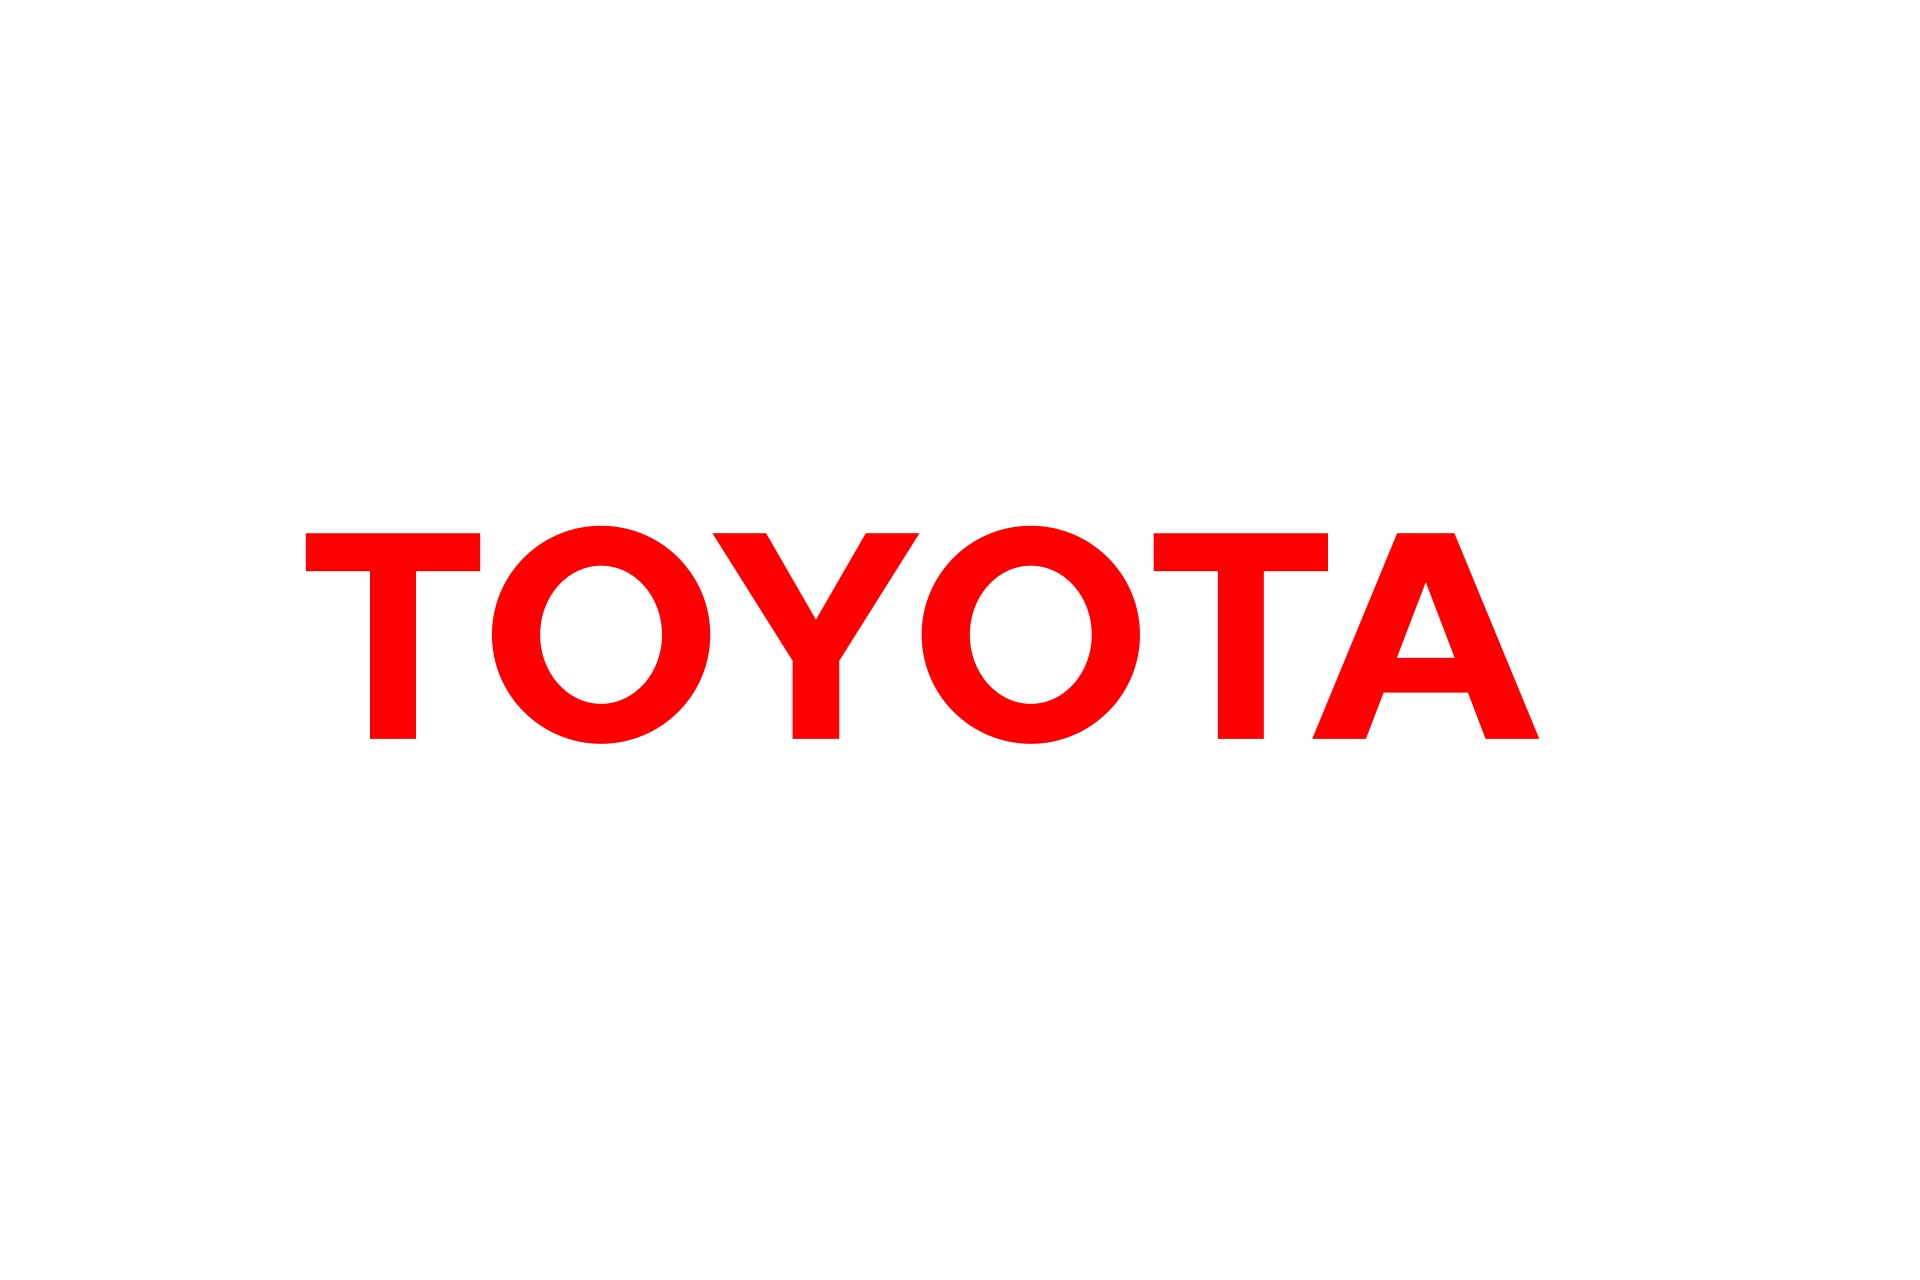 トヨタ、3車種の型式指定取消について見解 「是正命令を真摯に受止め、ダイハツの再生・変革に向けて取り組んでいく」